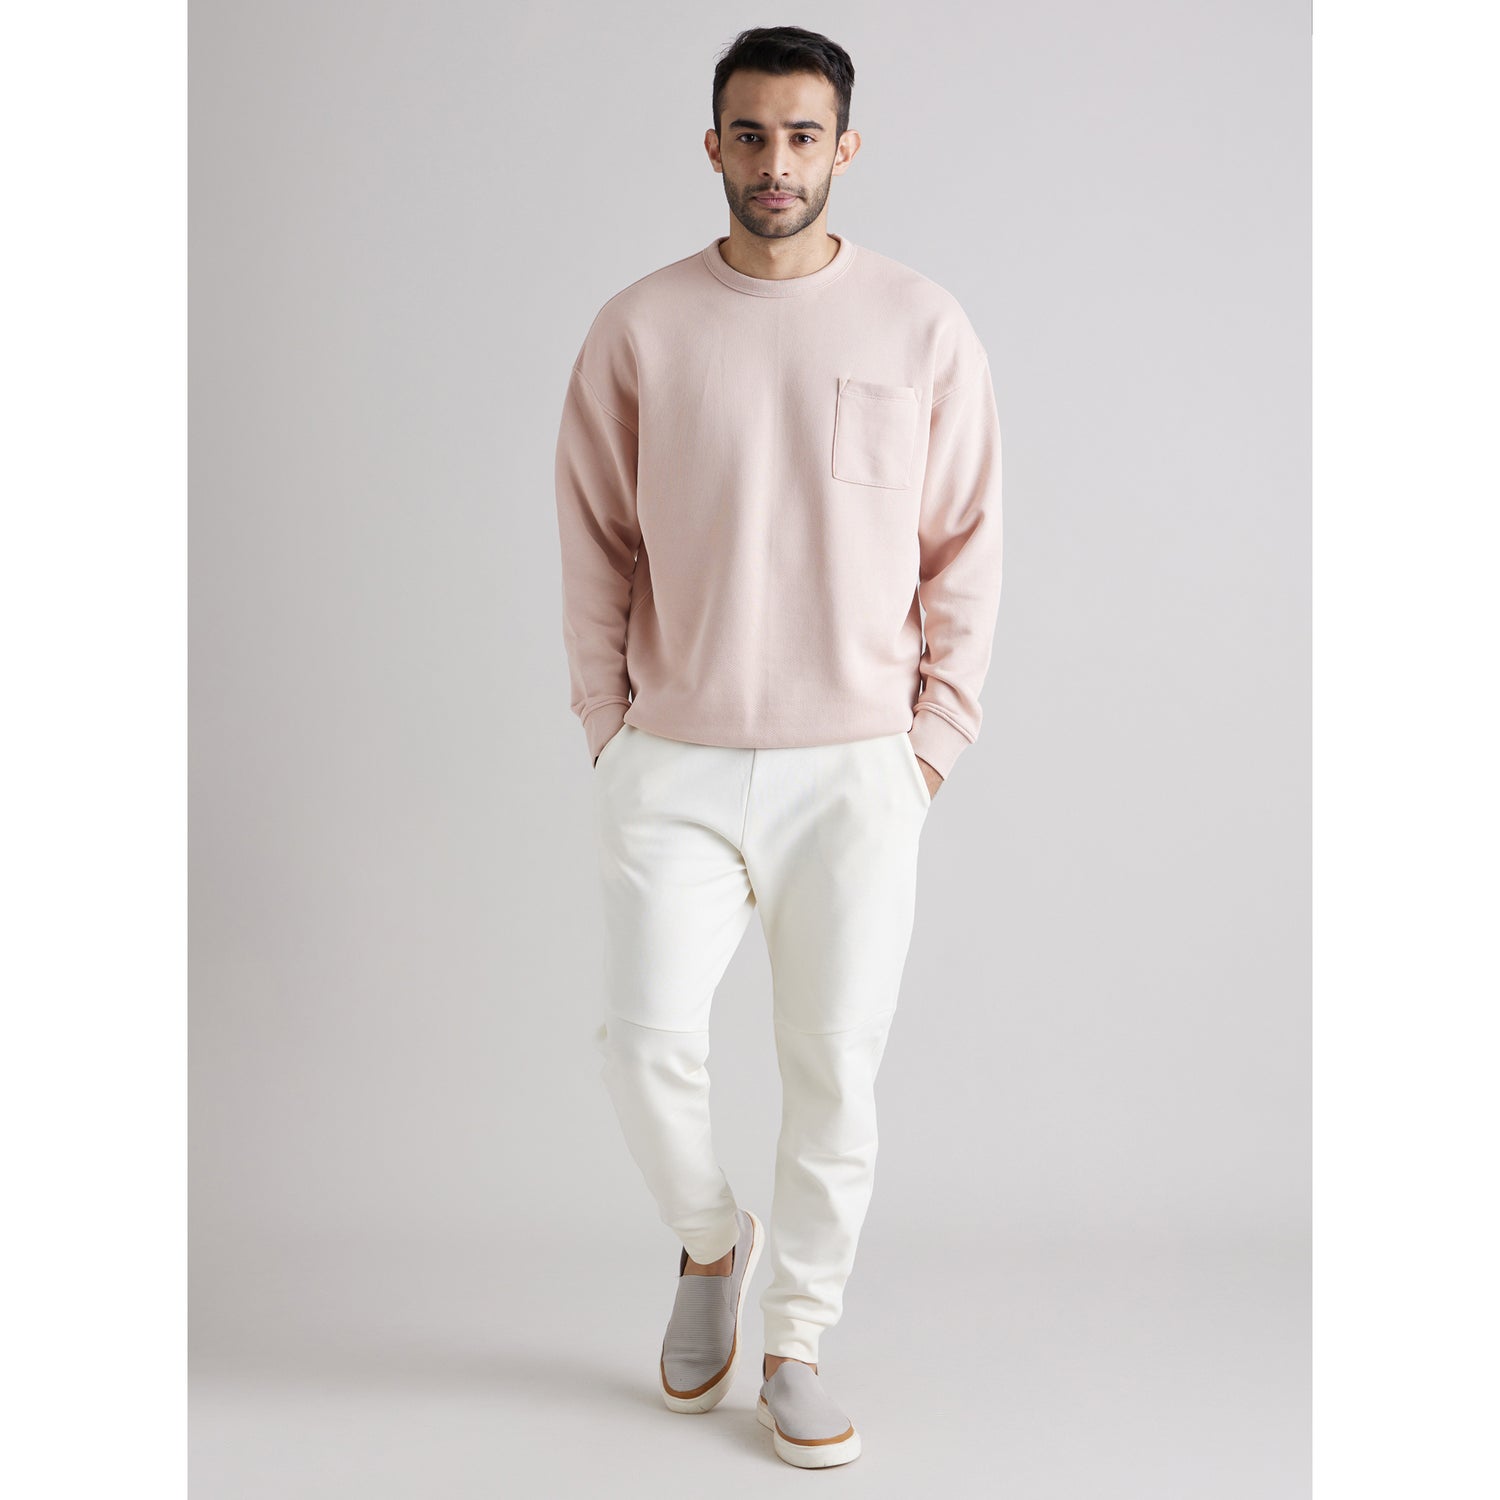 Pink Solid Round Neck Cotton Sweatshirt (BESWEATBOX)